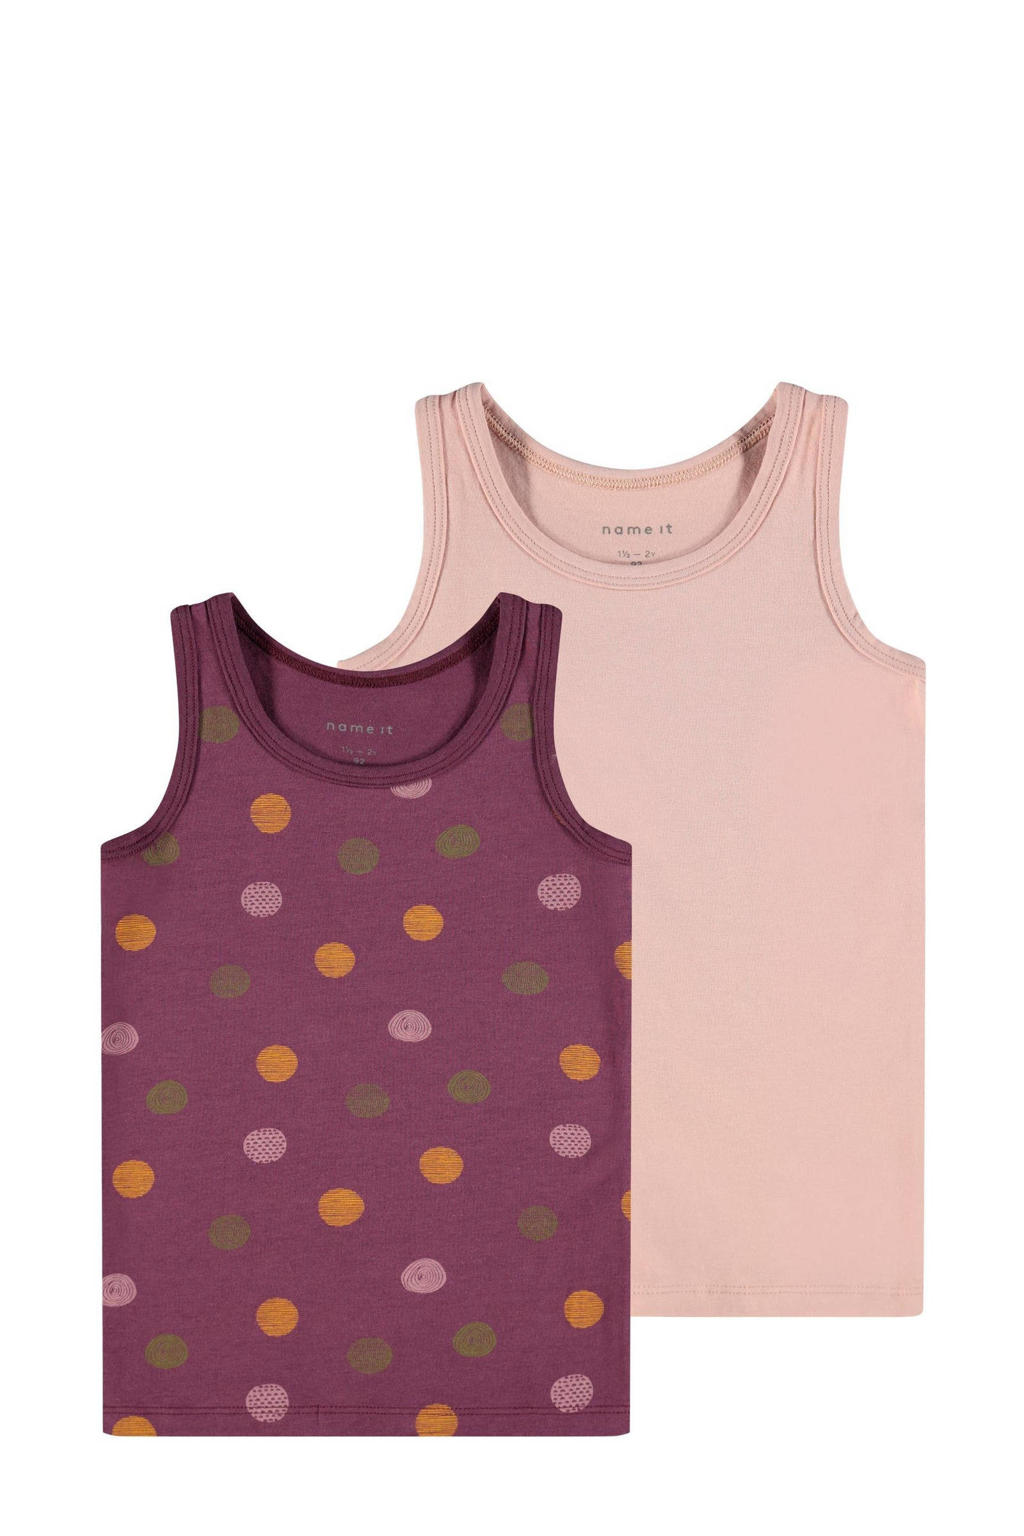 NAME IT MINI hemd - set van 2 van biologisch katoen paars/roze